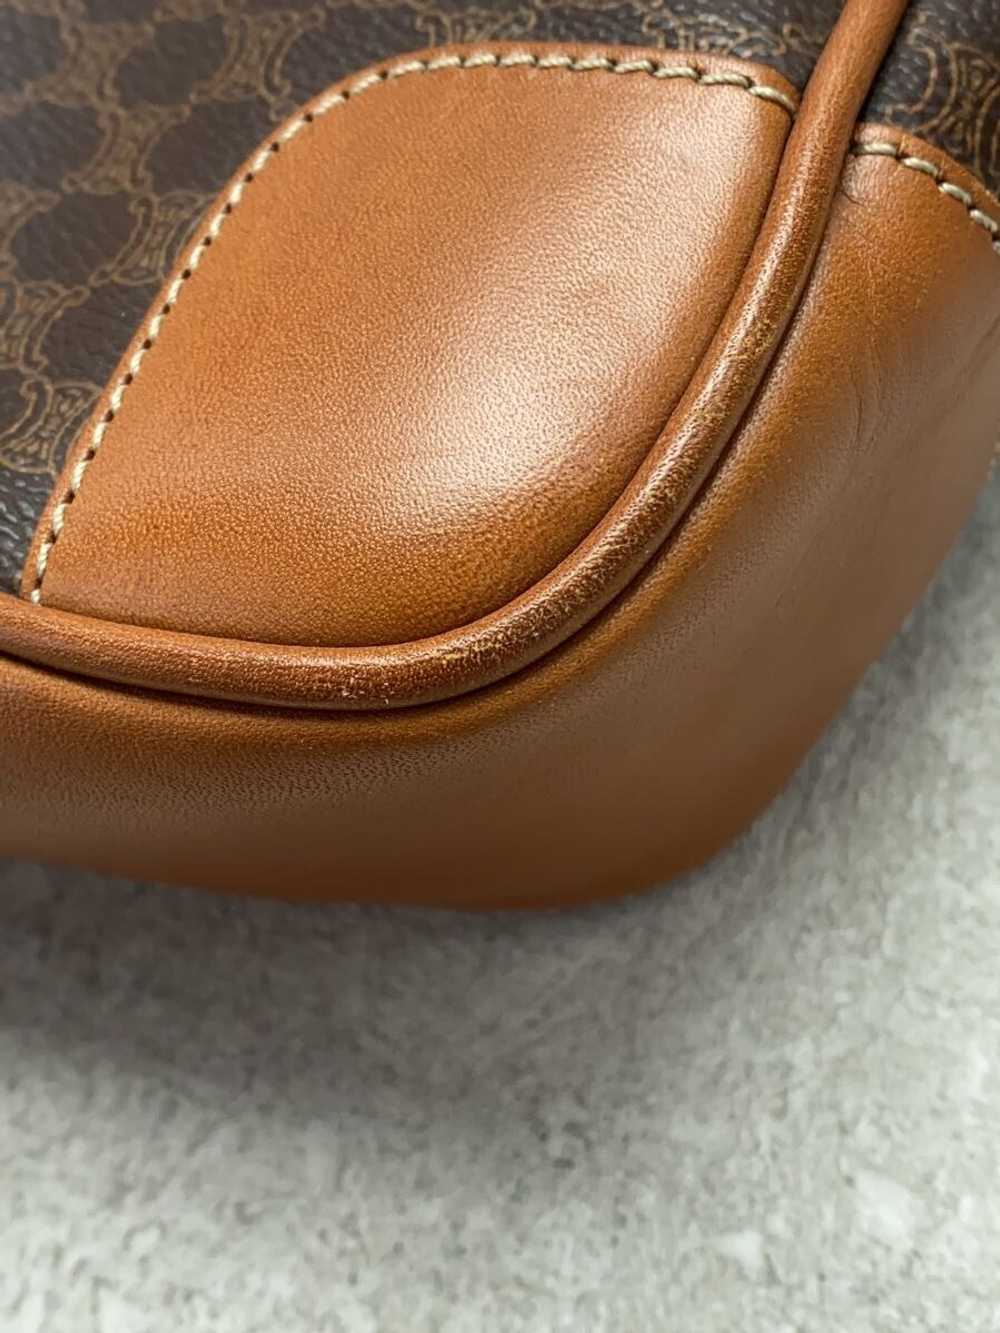 [Japan Used Bag] Used Celine Handbag/Leather/Brw/… - image 7